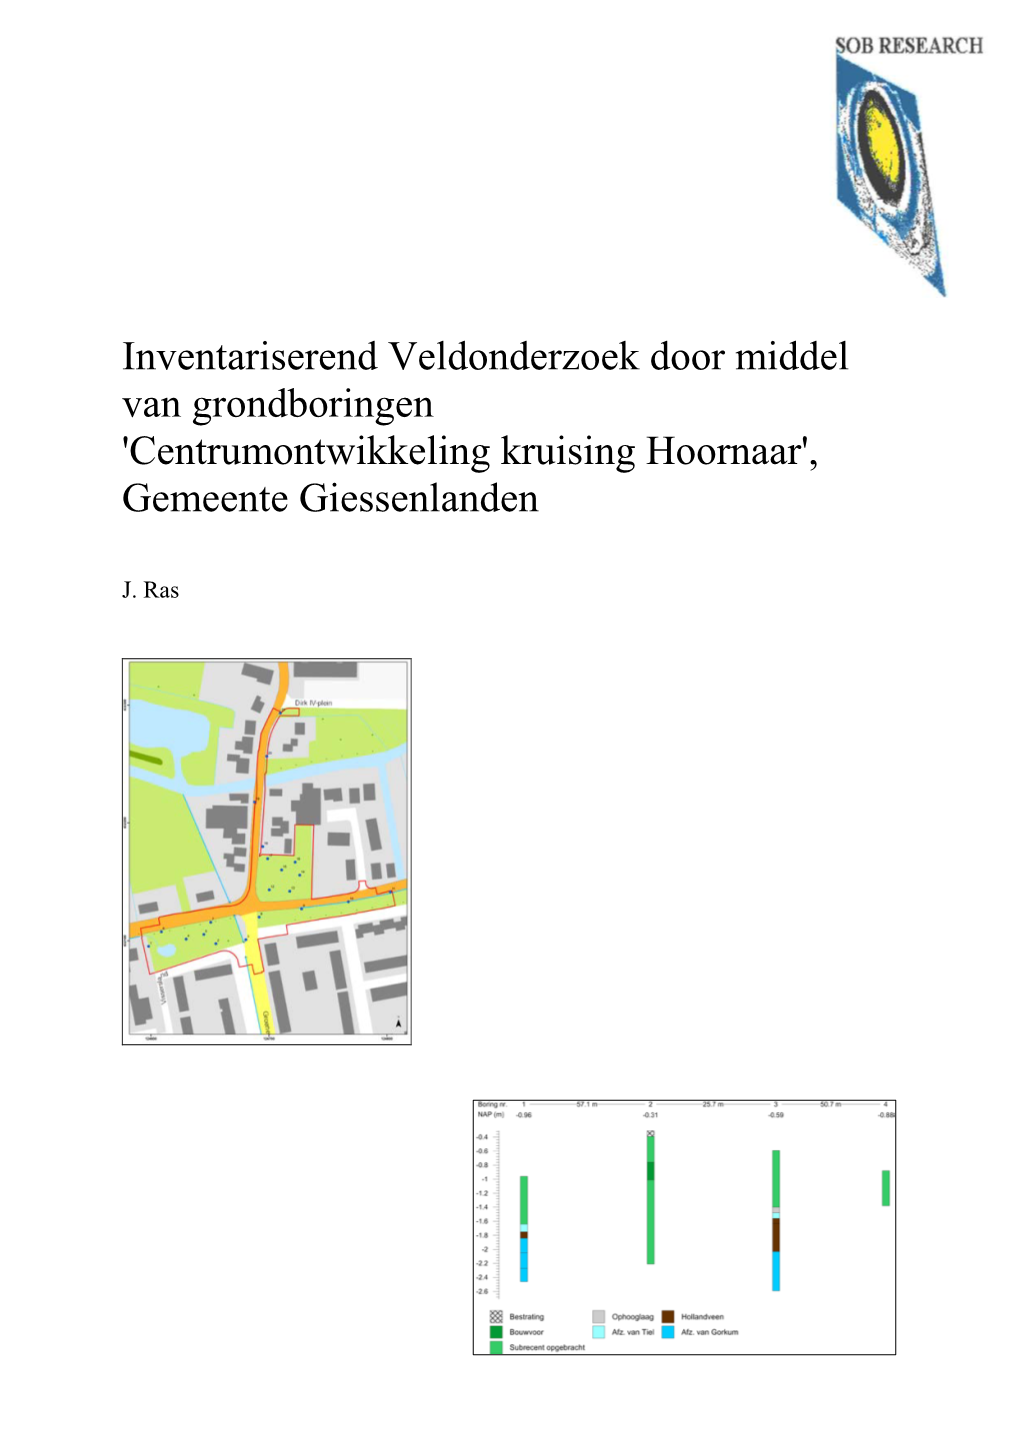 Inventariserend Veldonderzoek Door Middel Van Grondboringen 'Centrumontwikkeling Kruising Hoornaar', Gemeente Giessenlanden